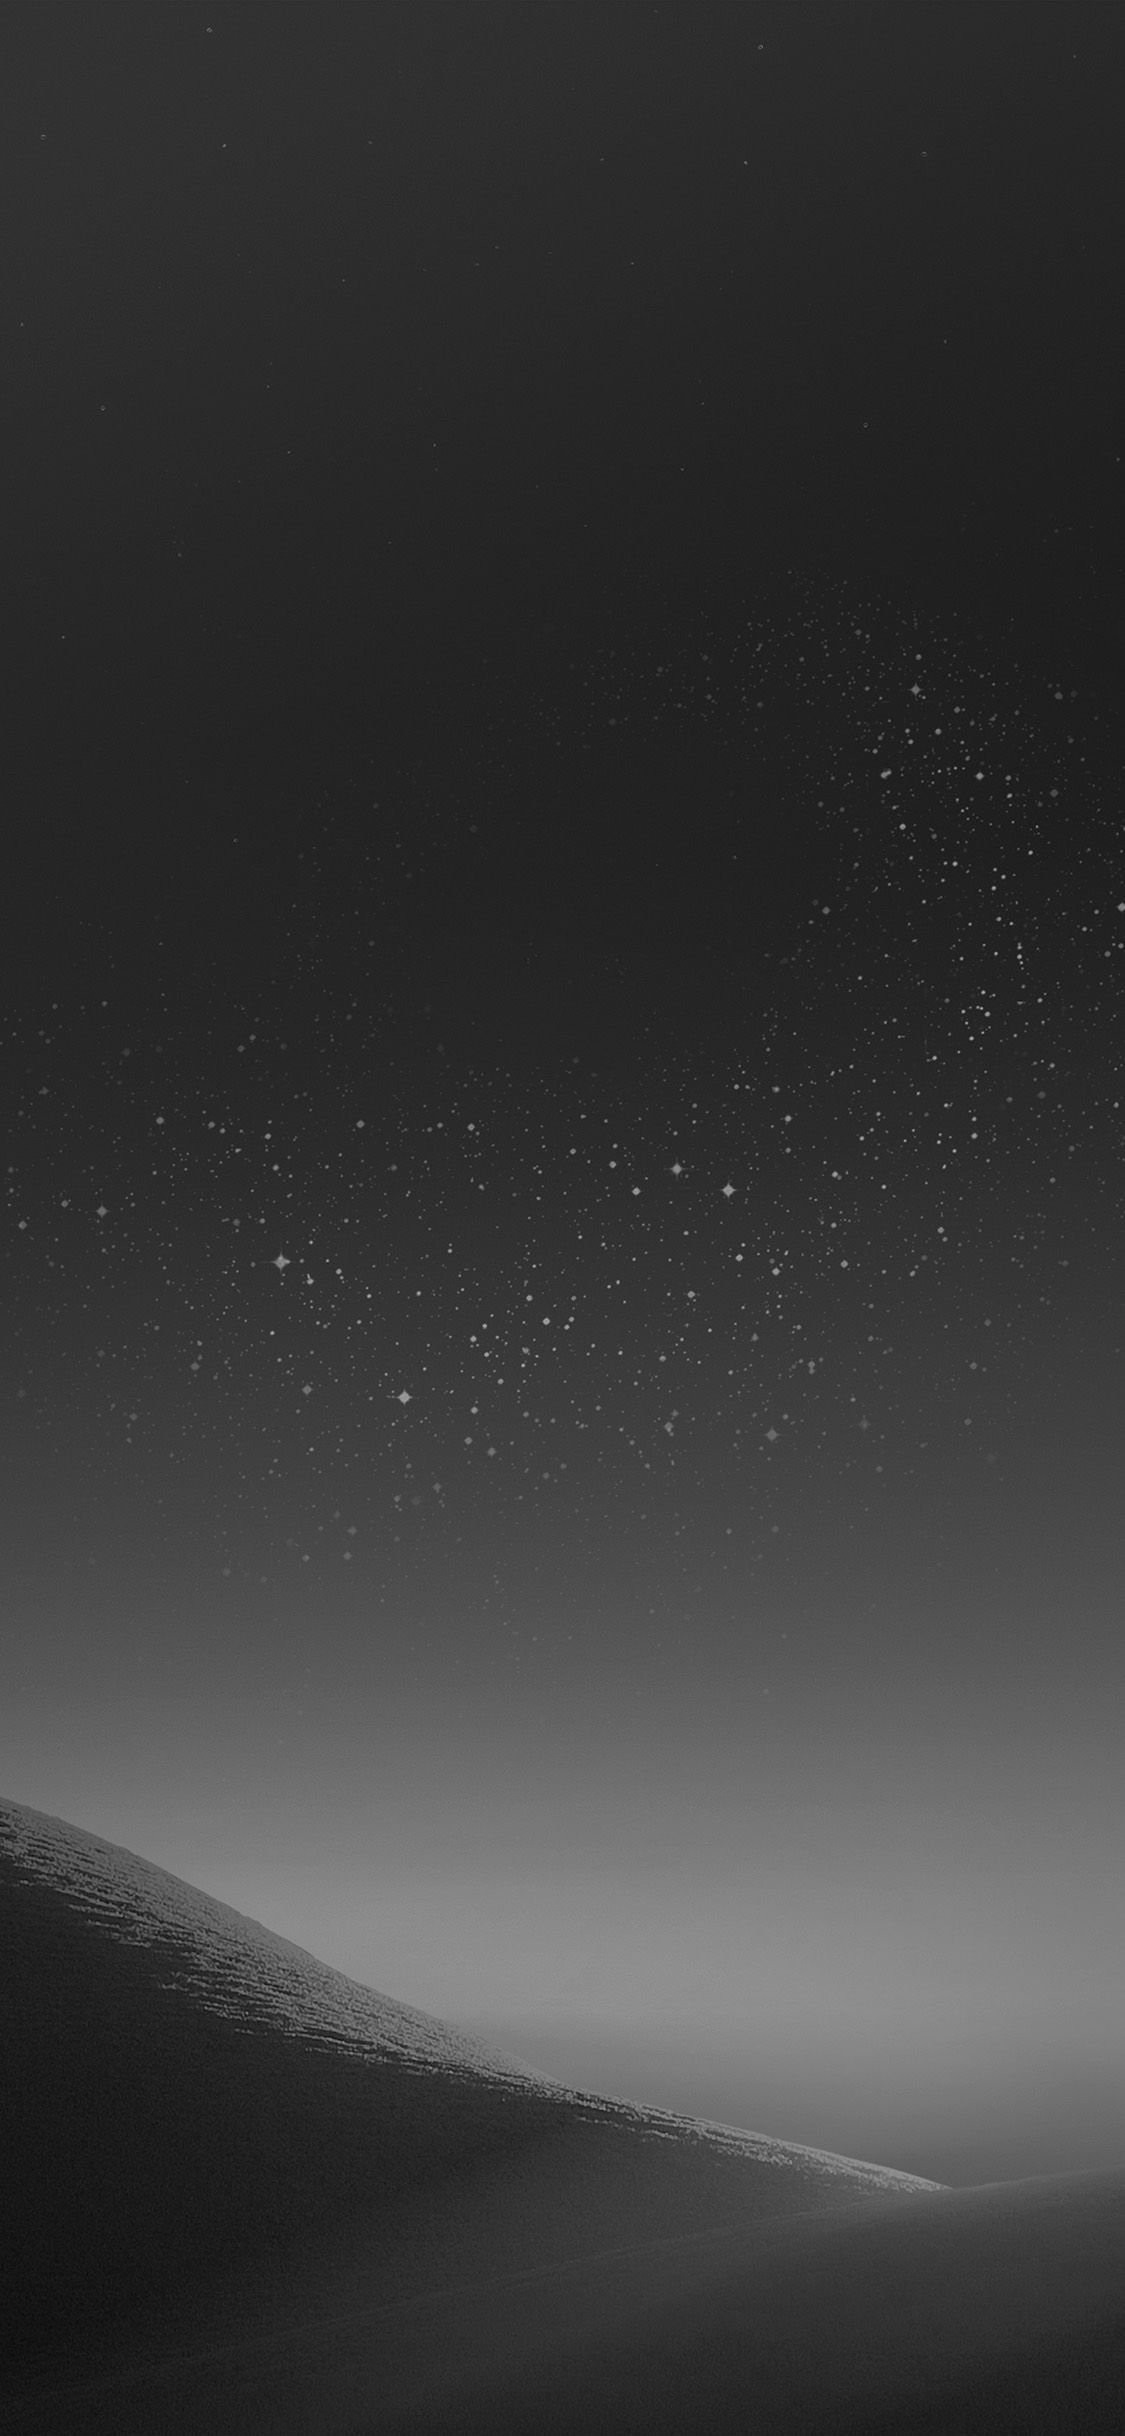 Galaxy Night Sky Star Art Illustration Samsung Dark Bw Wallpaper